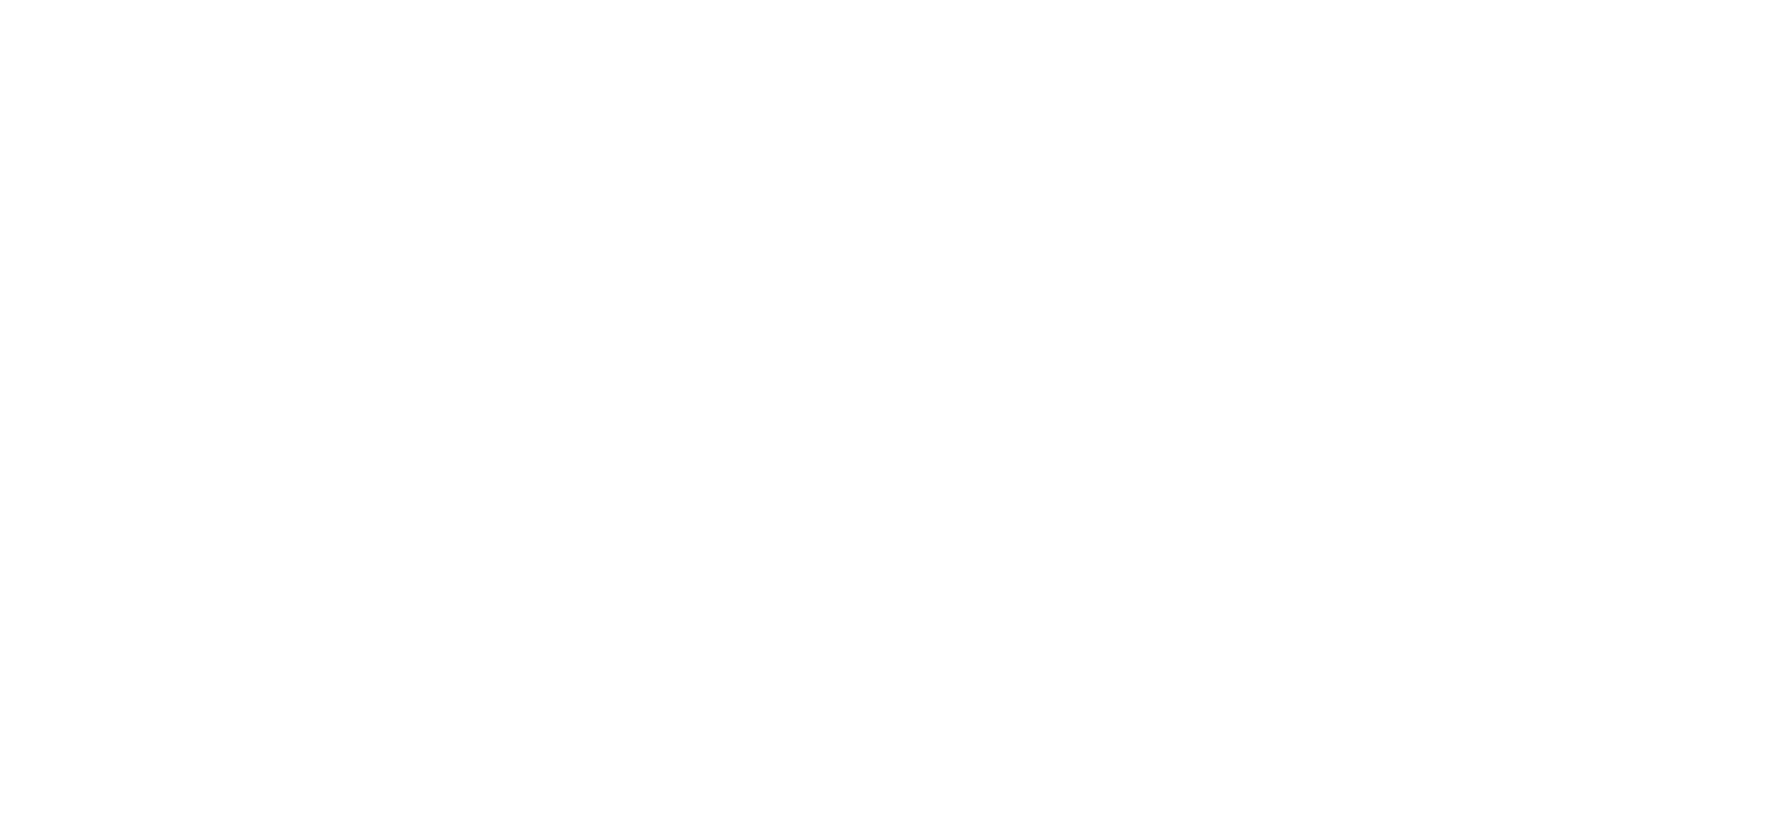 Matt's signature